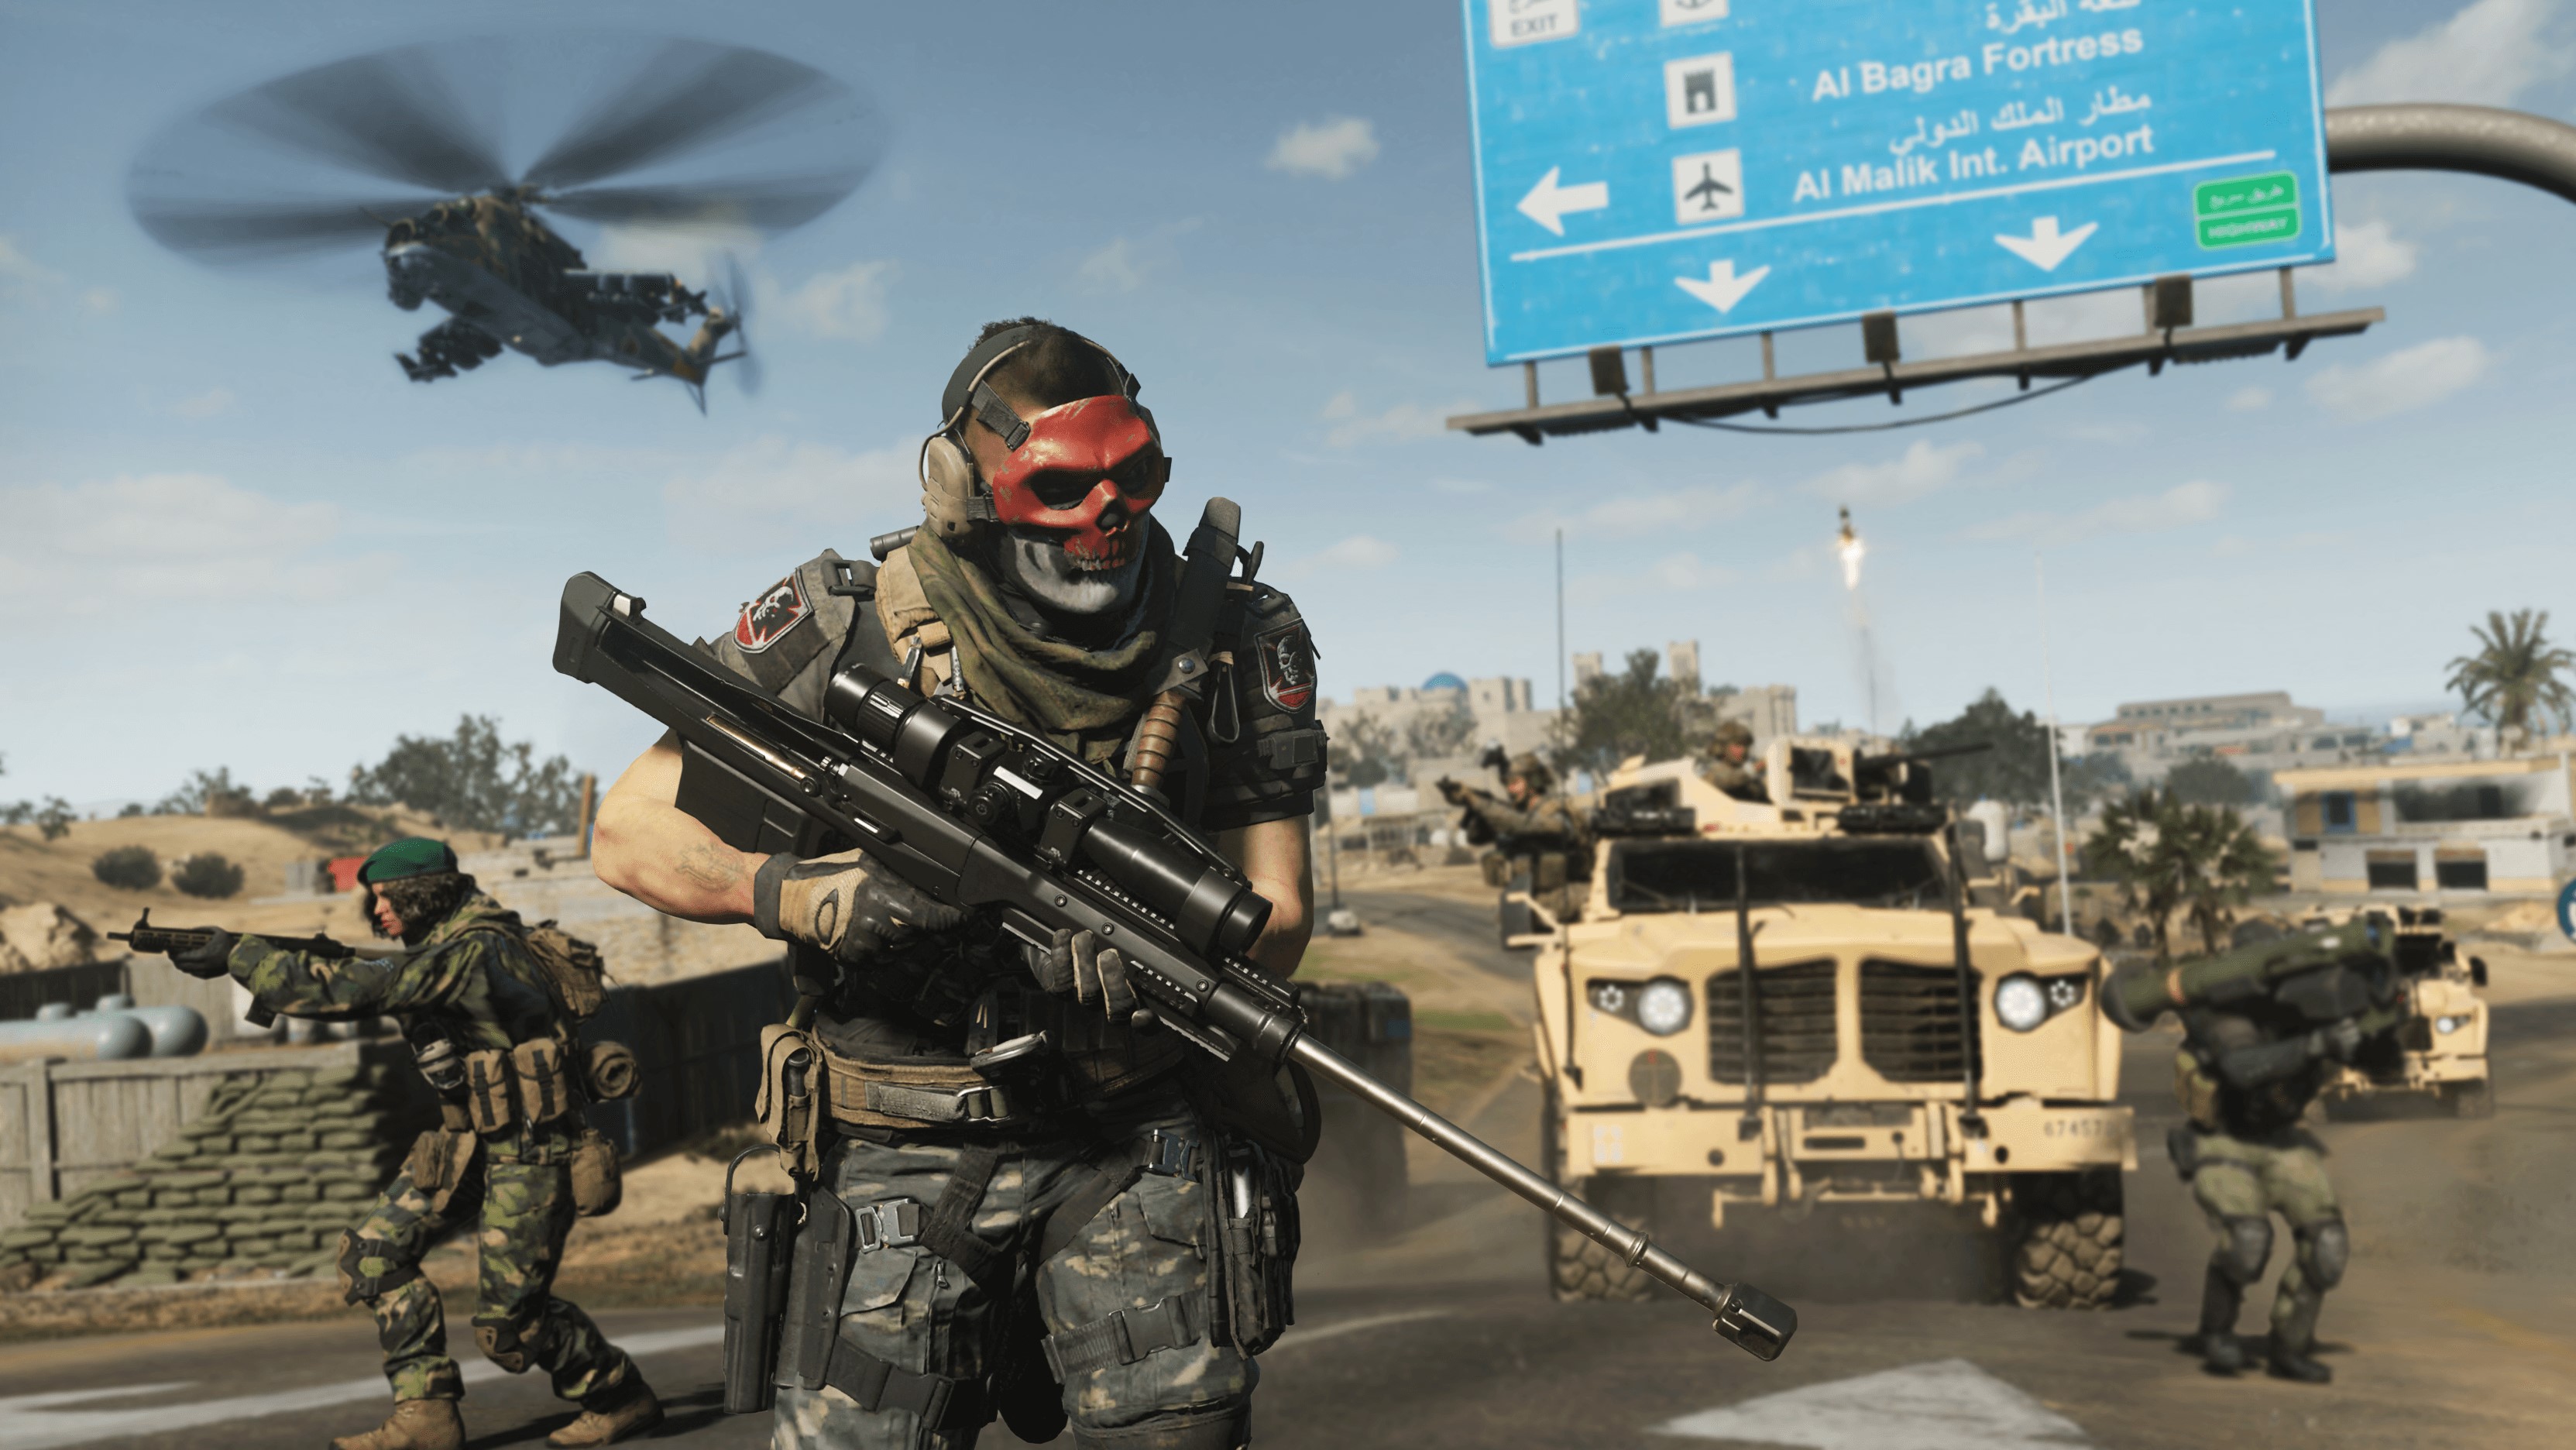 Call of Duty: Modern Warfare 2 Review - GameSpot